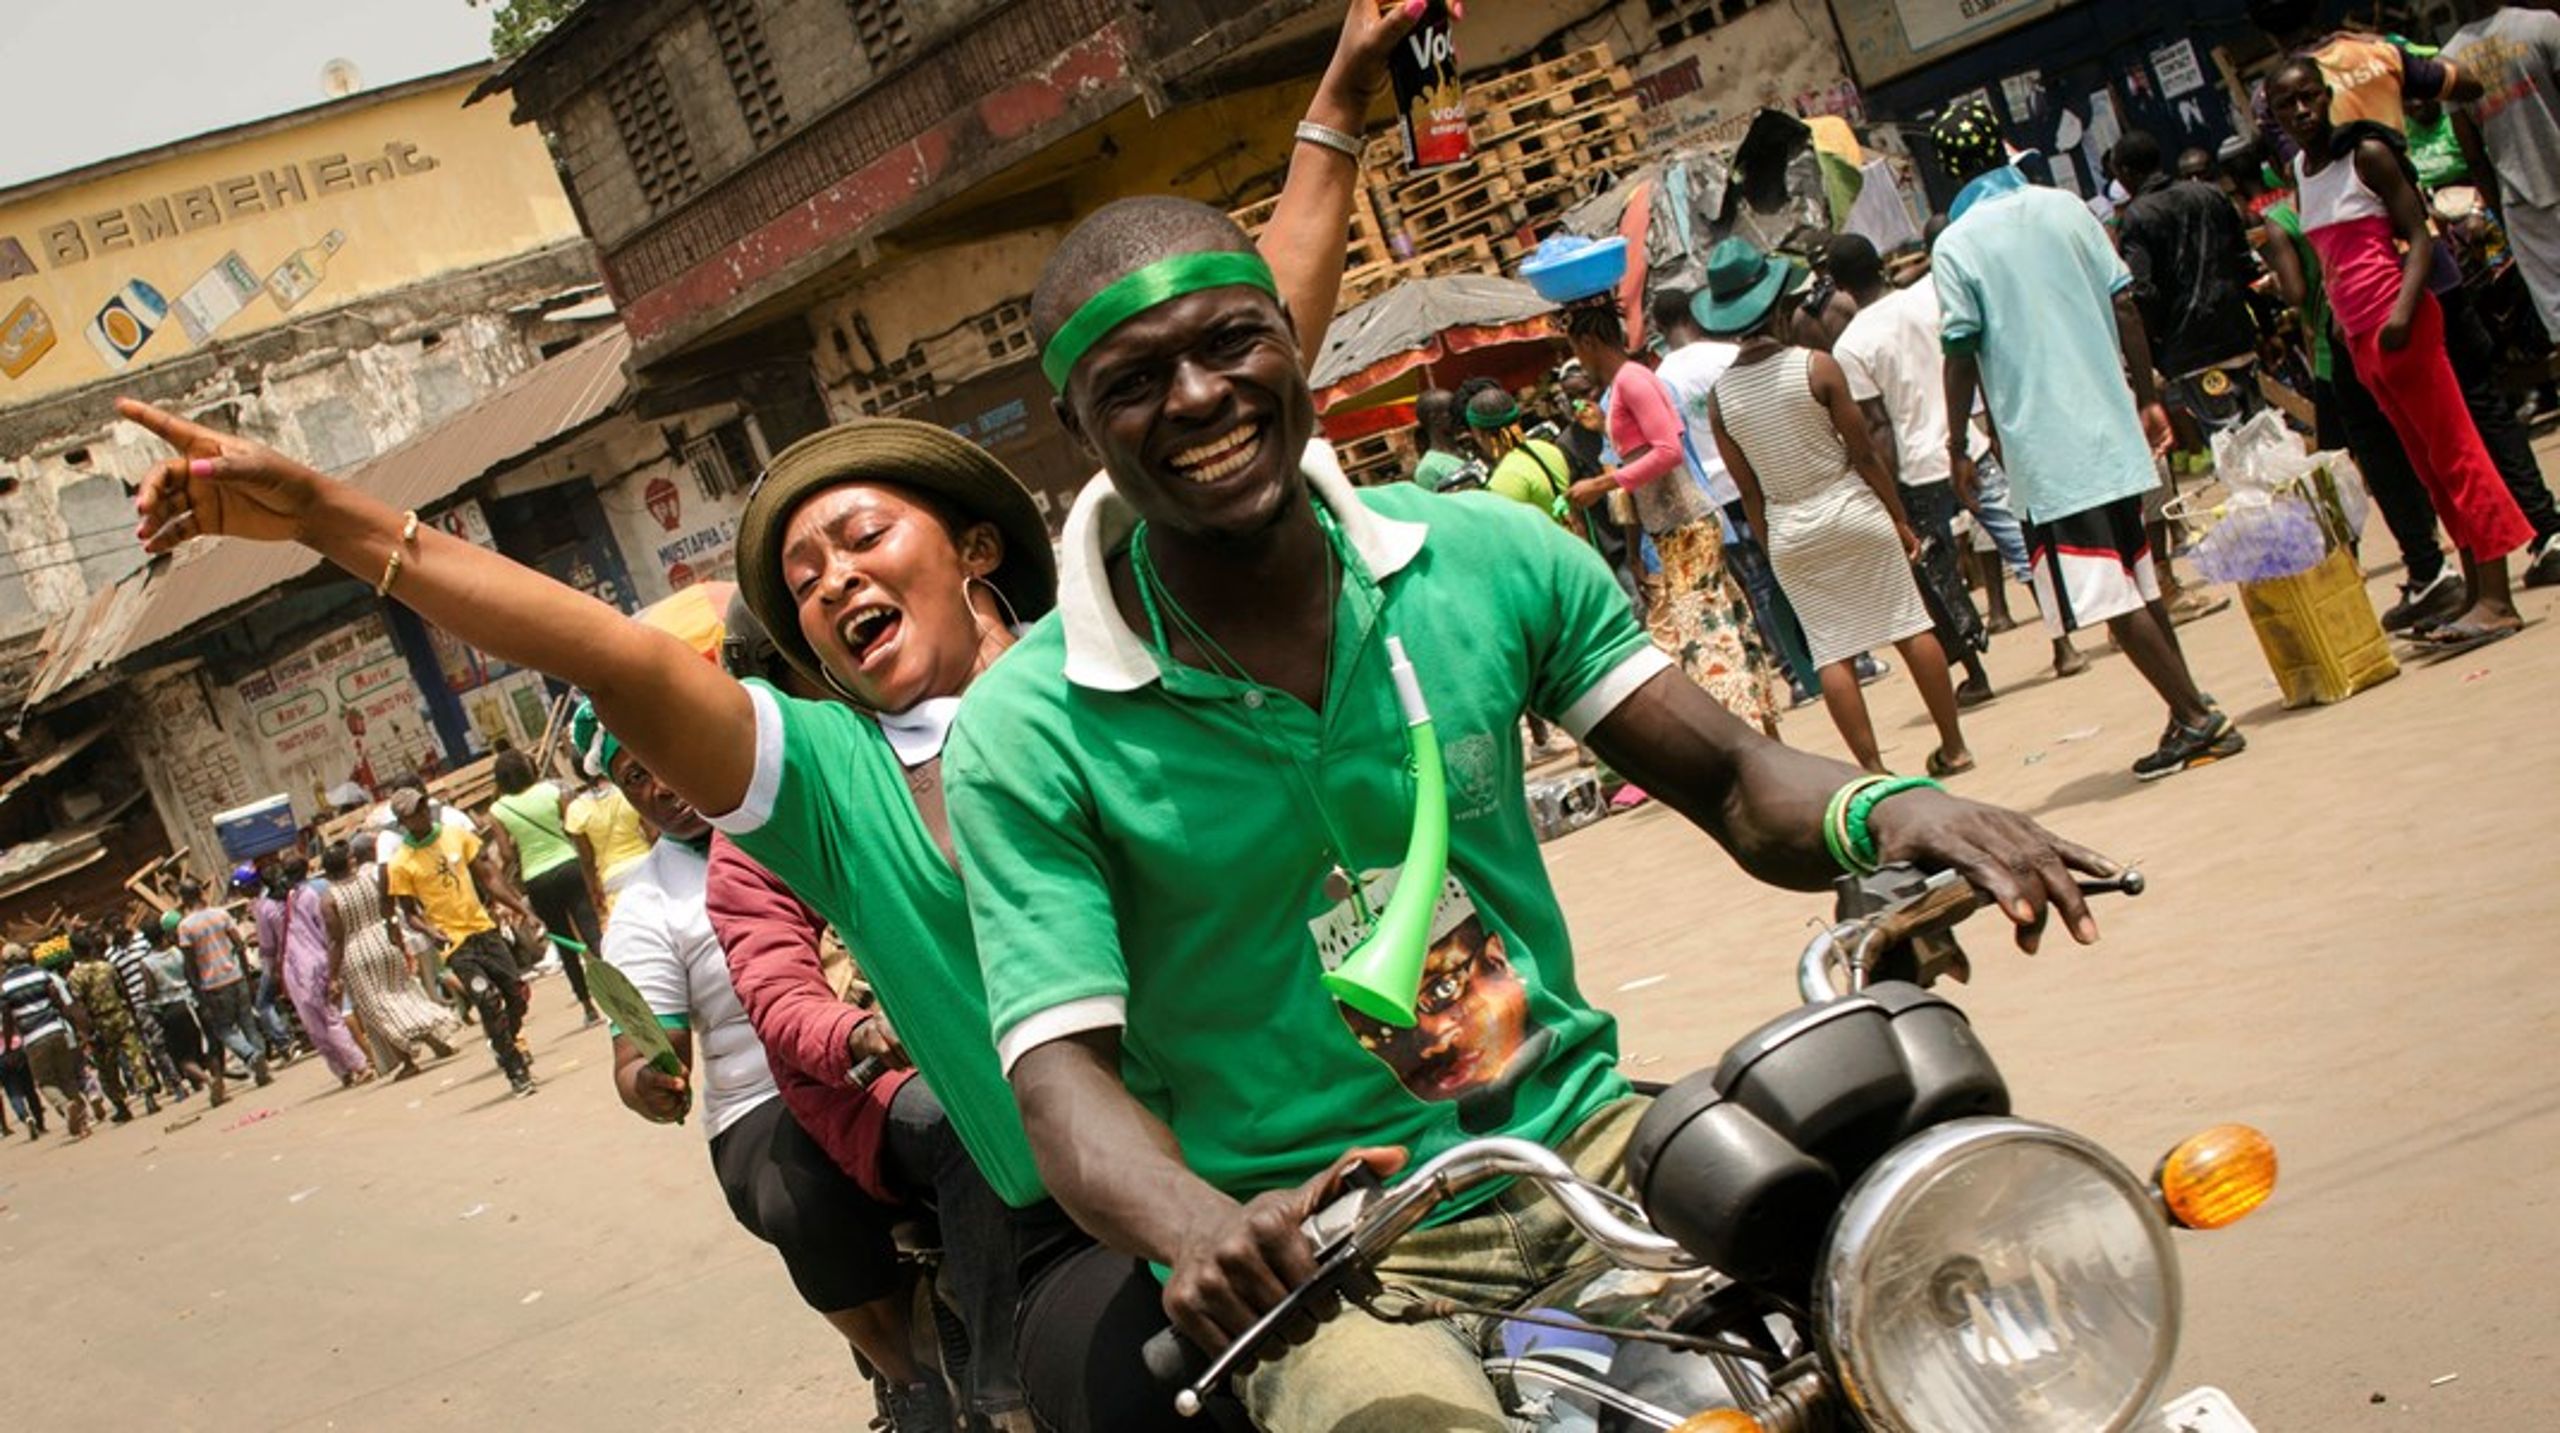 Sierra Leone var fra 1991 til 2002 ramt af en blodig borgerkrig, men har de seneste årtier bevæget sig i en mere demokratisk retning. Efter flere års pause er Danida tilbage med projekter i landet (arkivfoto).